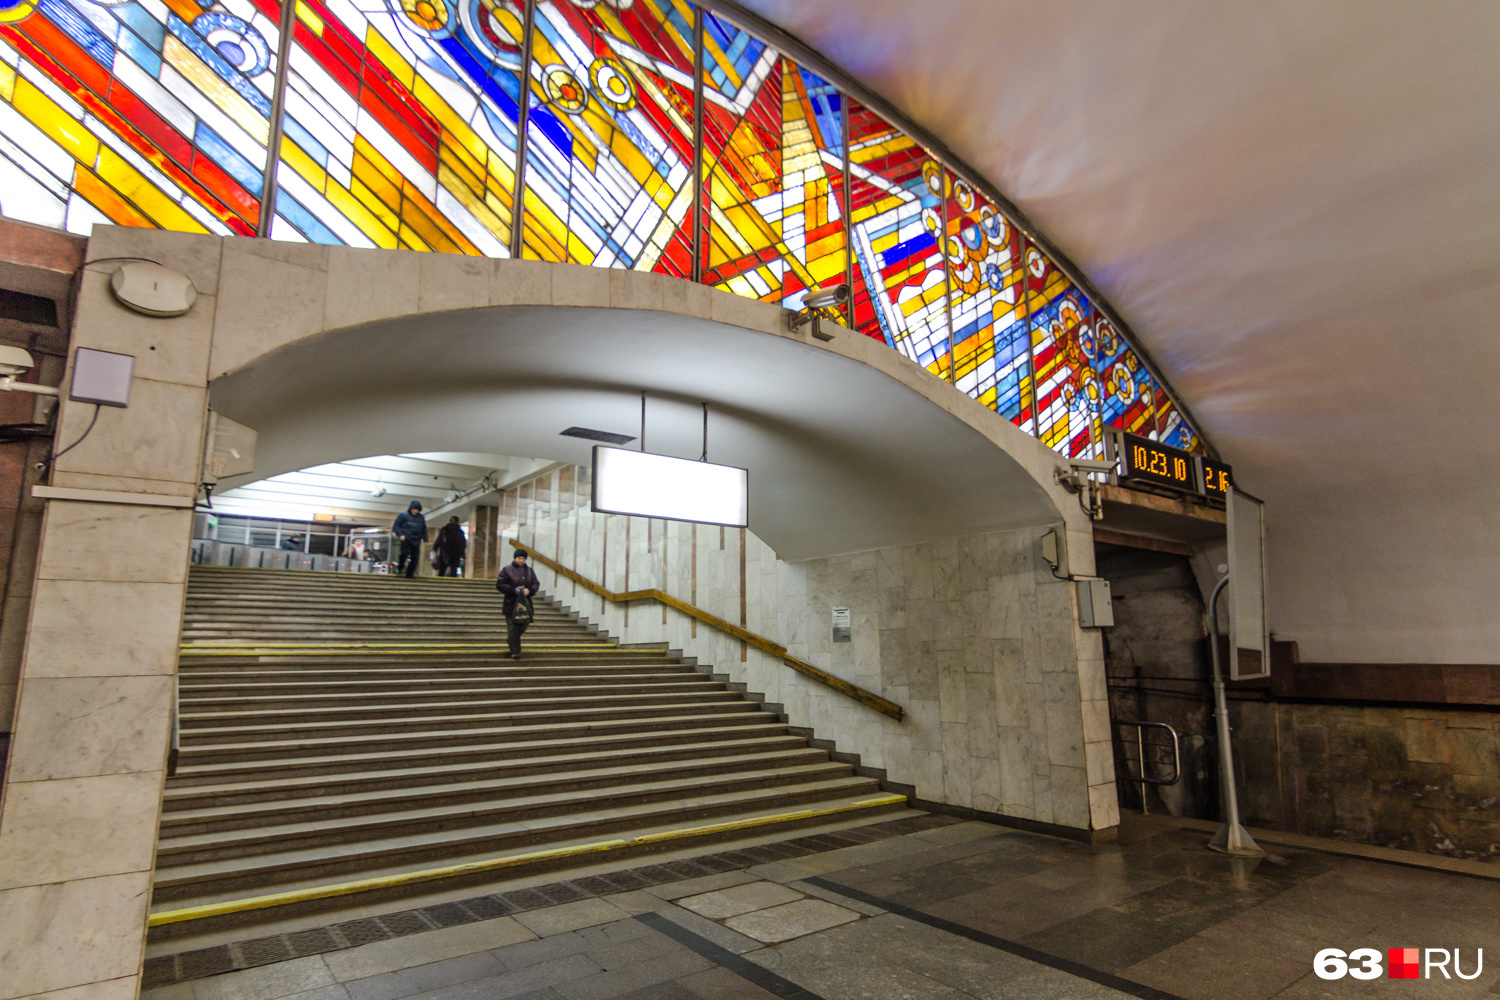 Каждая станция метро, построенная во времена СССР, — произведение искусства